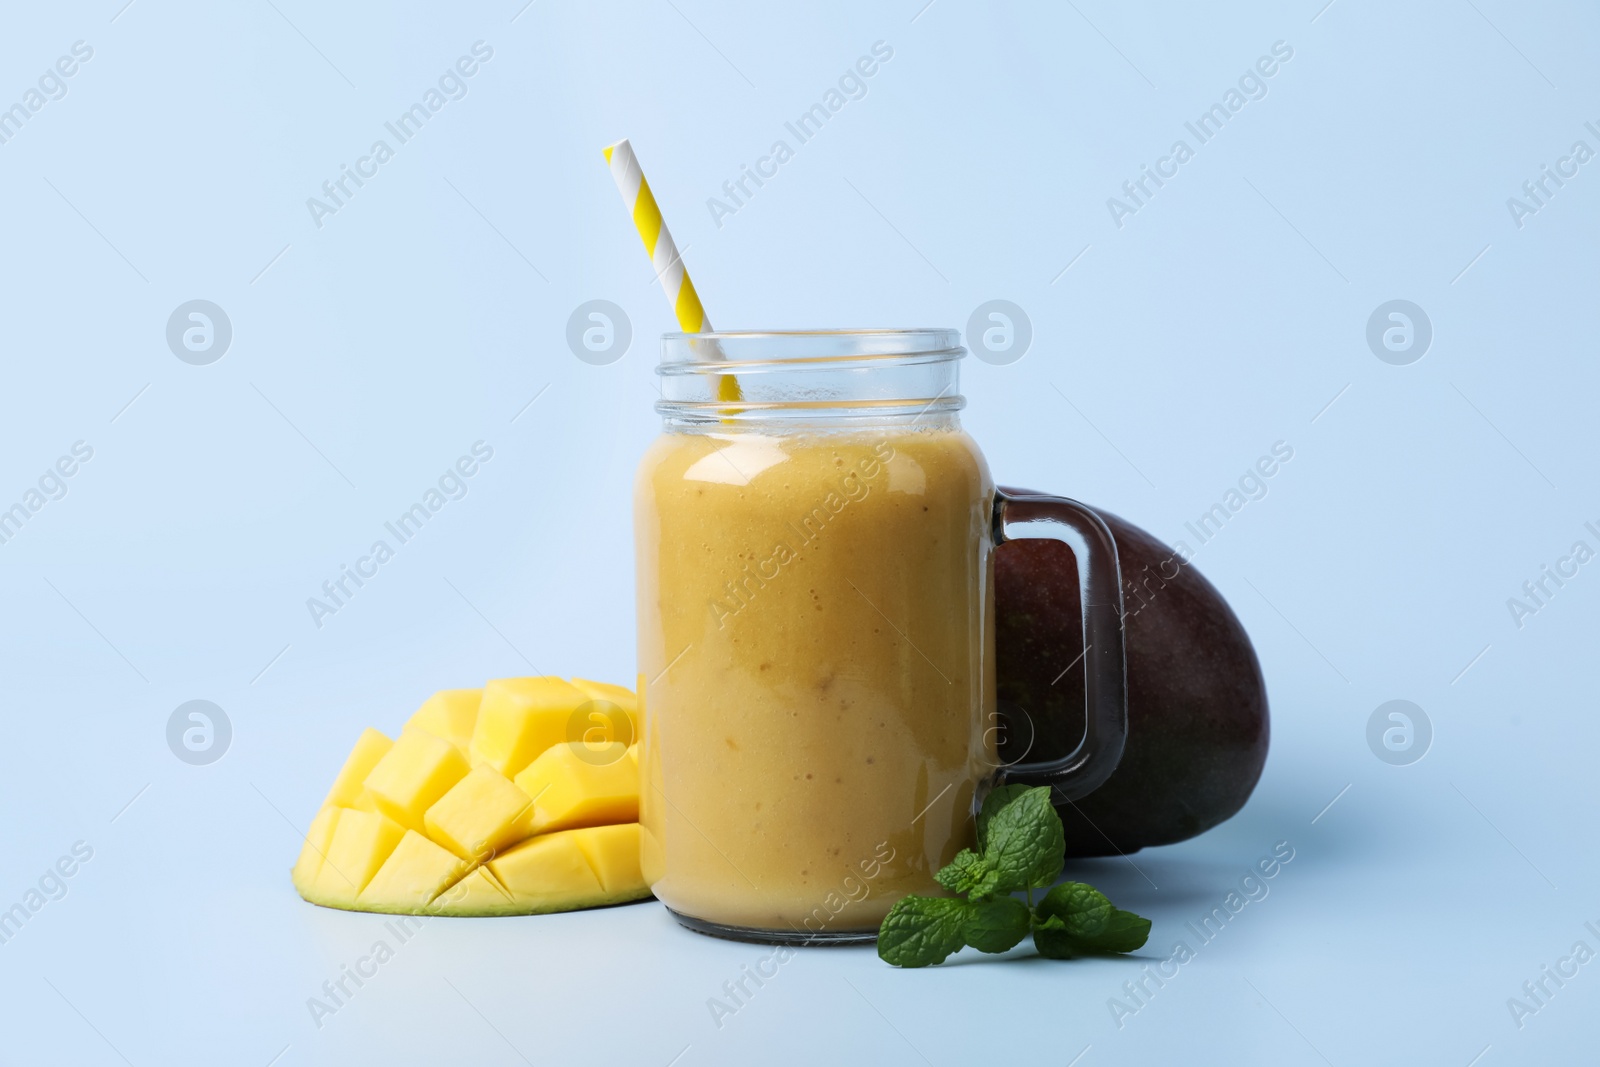 Photo of Mason jar with delicious fruit smoothie and fresh mango on light blue background